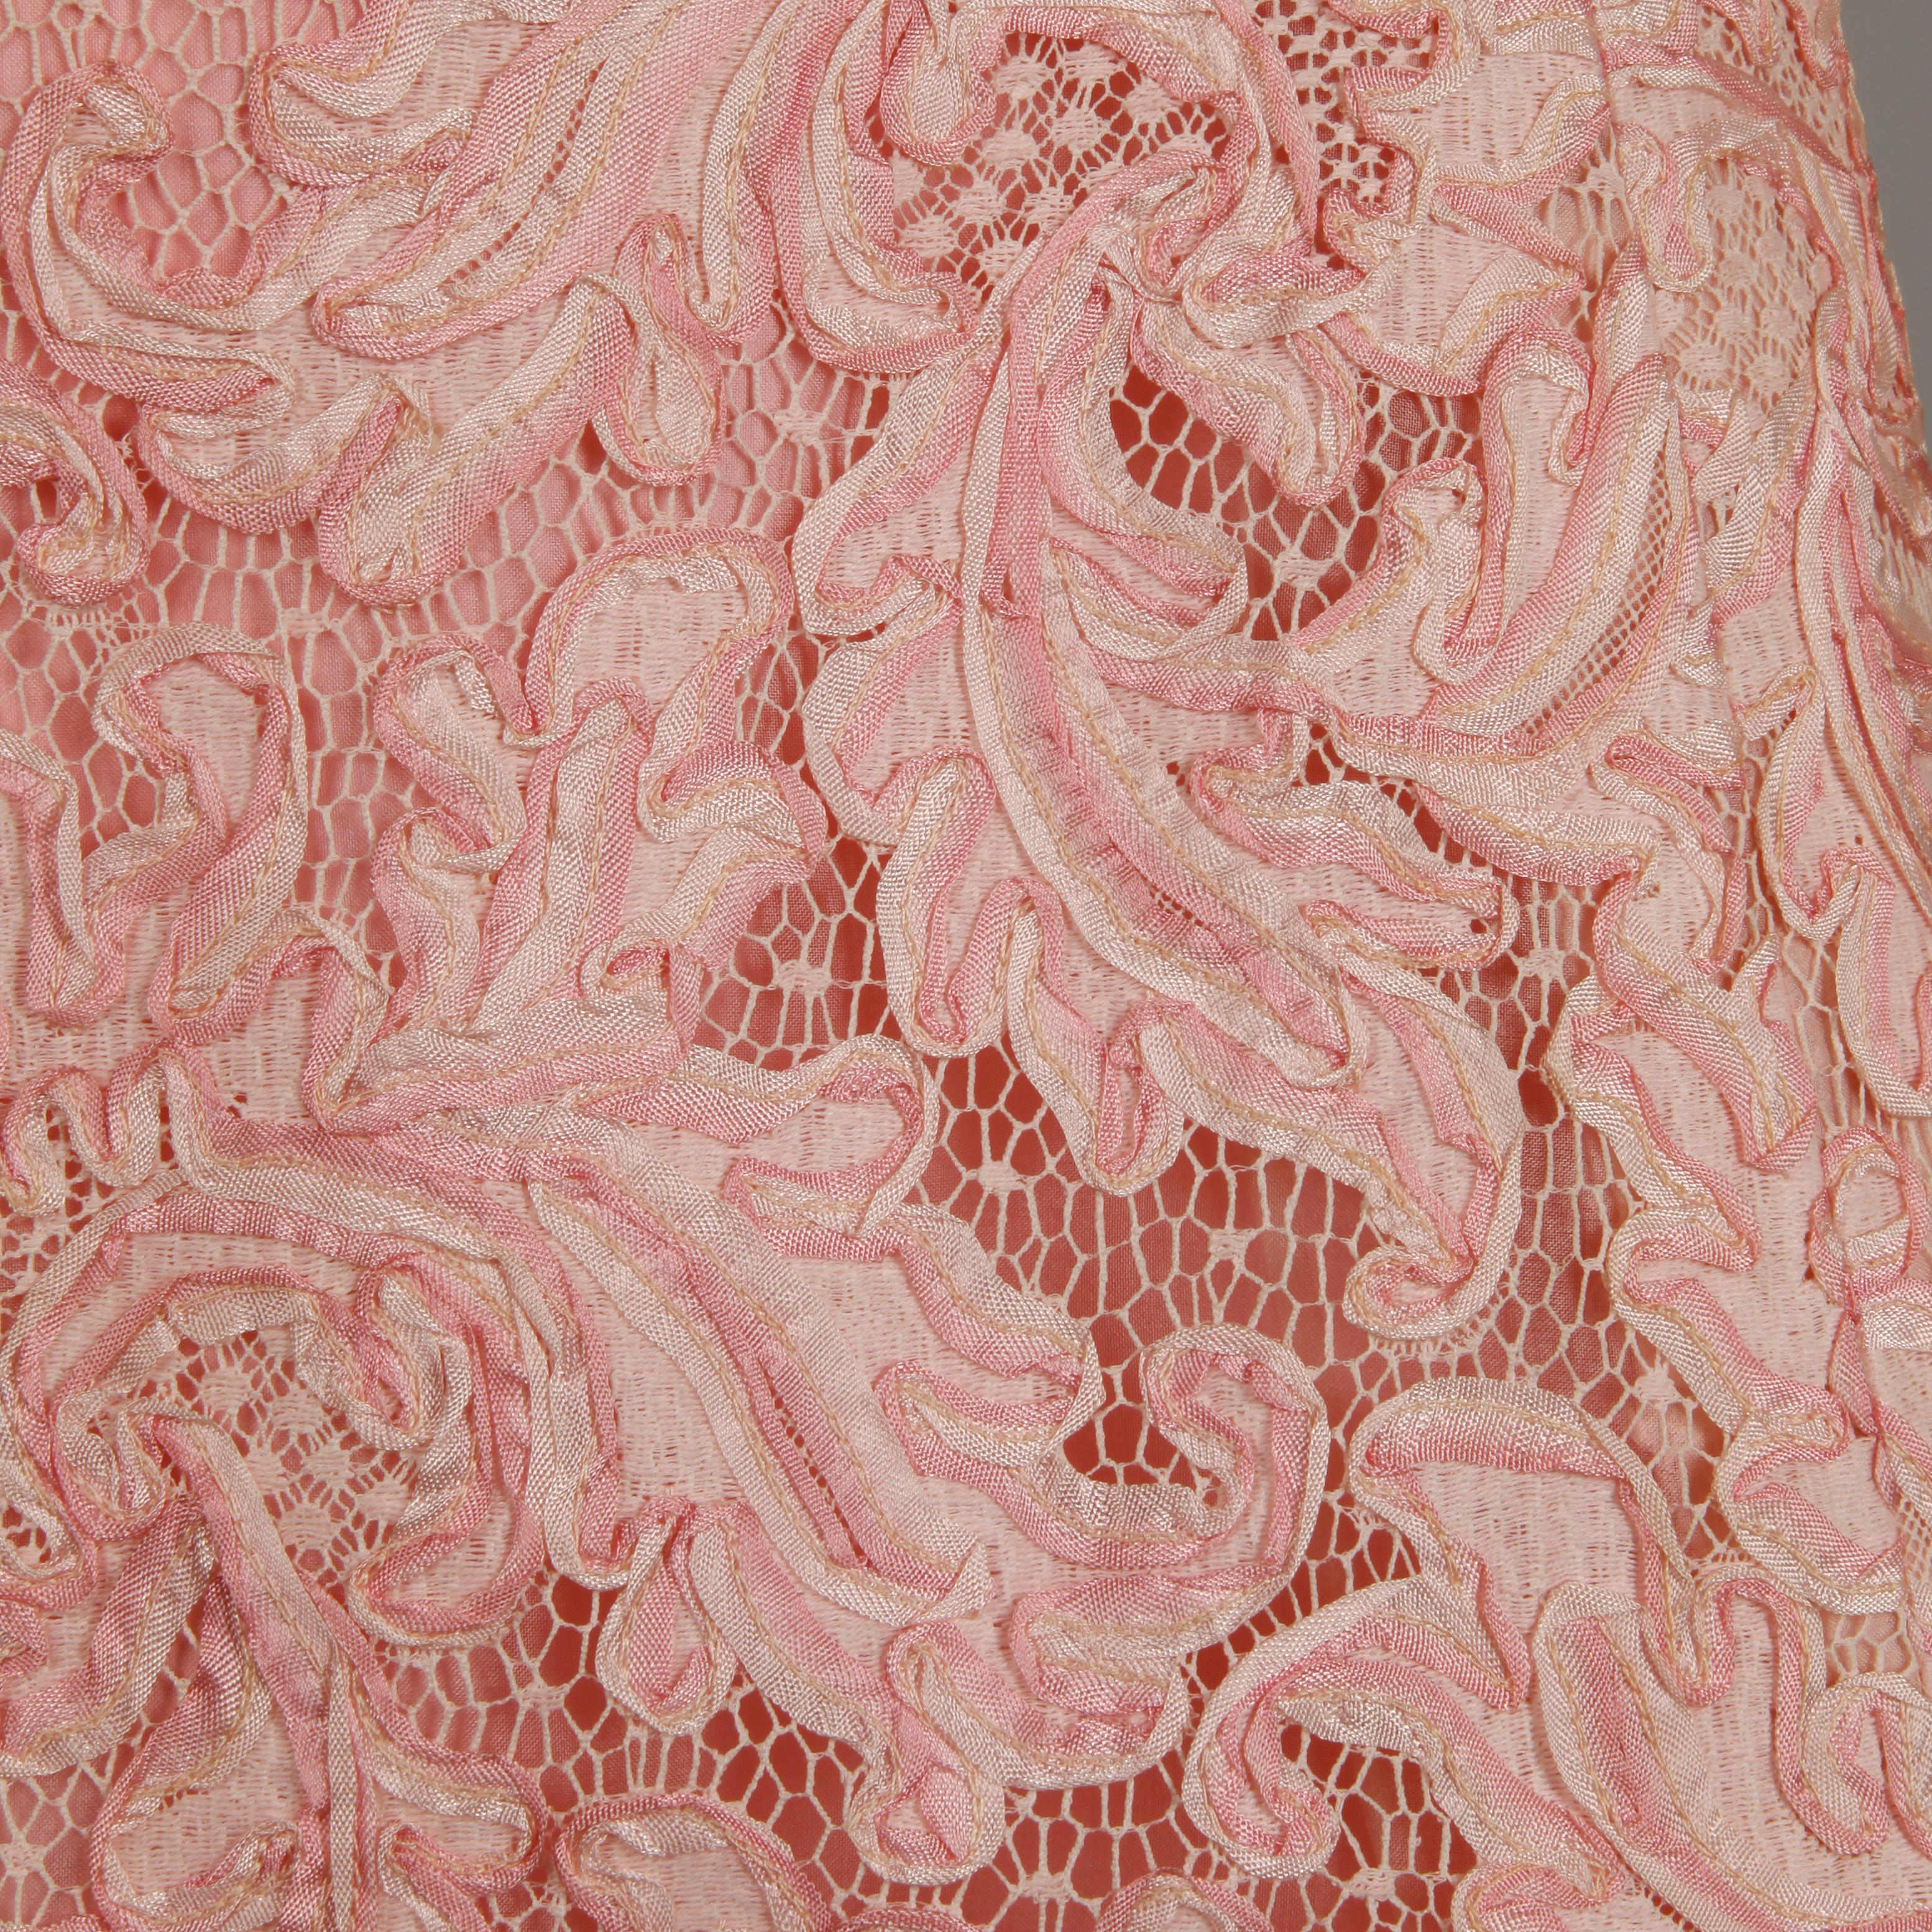 Women's 1960s Mollie Parnis Vintage Pink Soutache + Scalloped Lace Shift Dress Dress For Sale